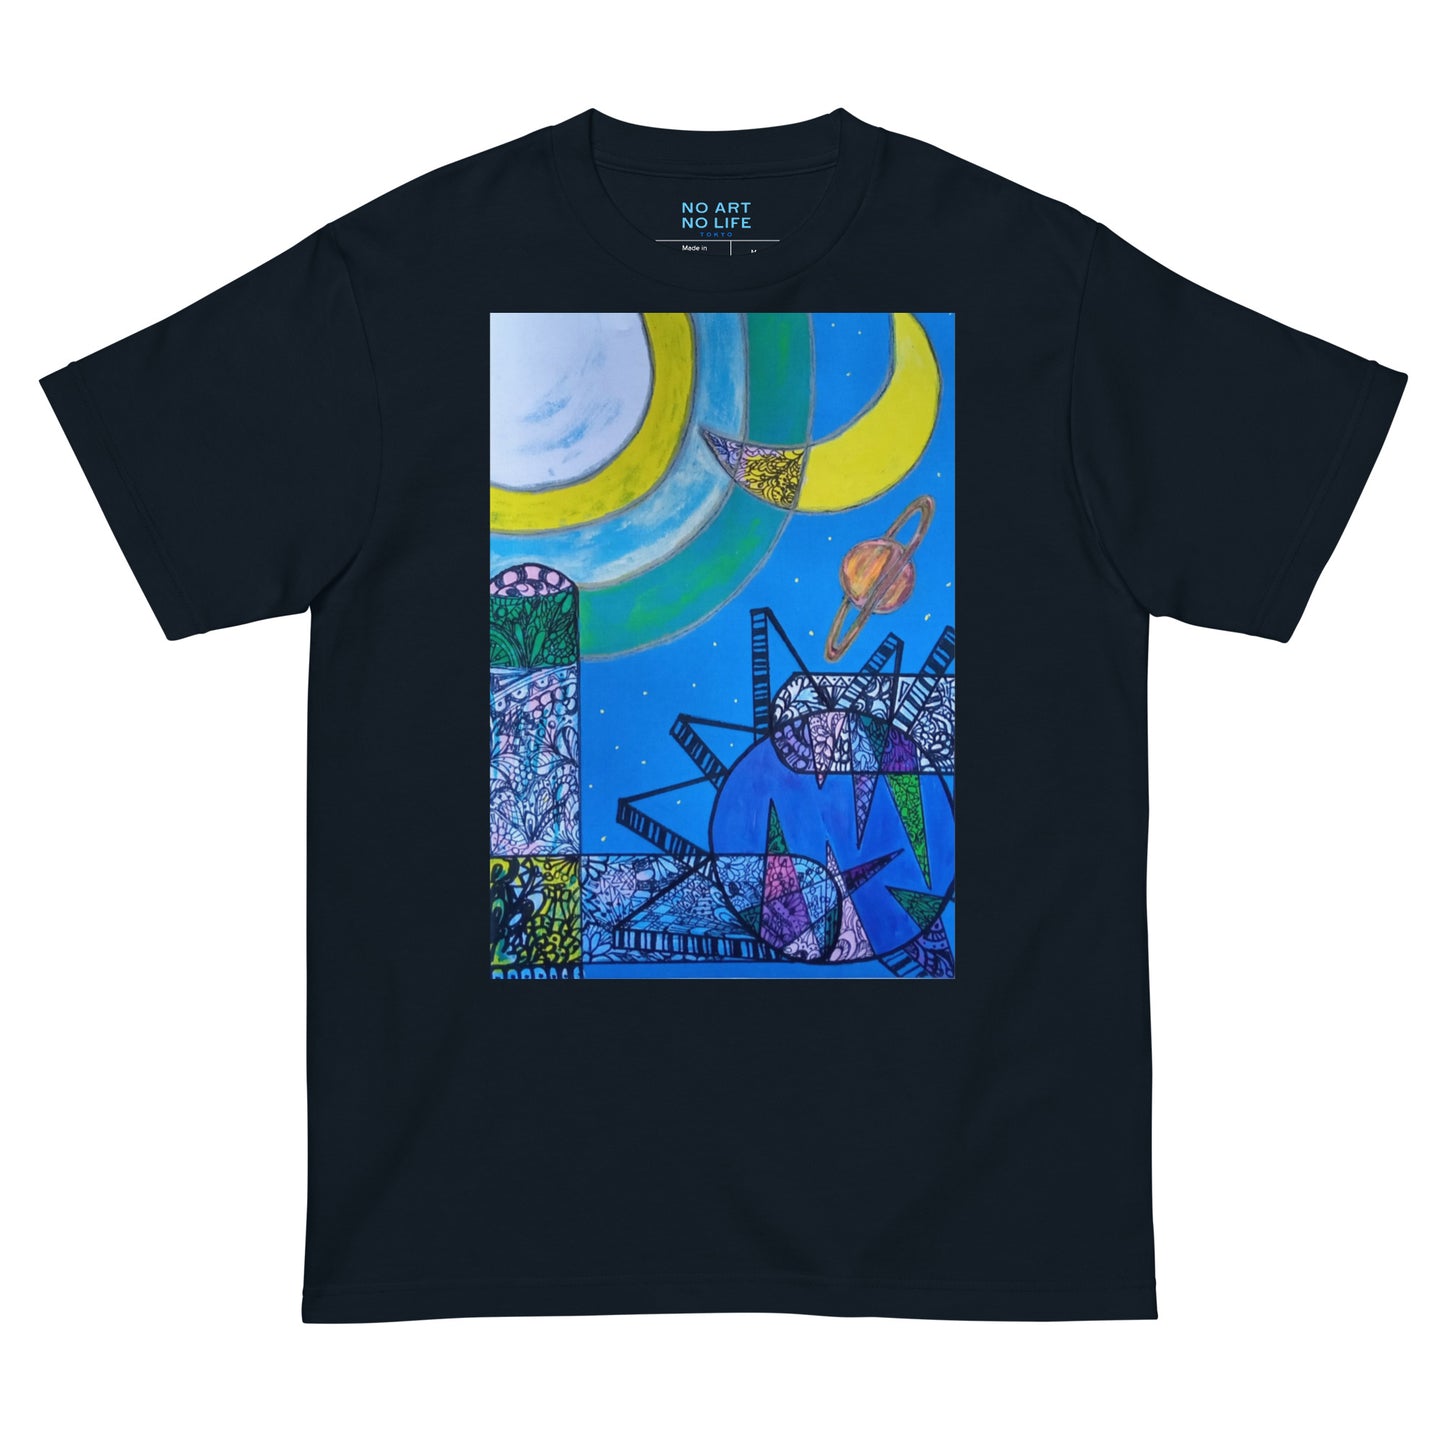 041-junken-6 前面プリント Tシャツ アートをデザイン